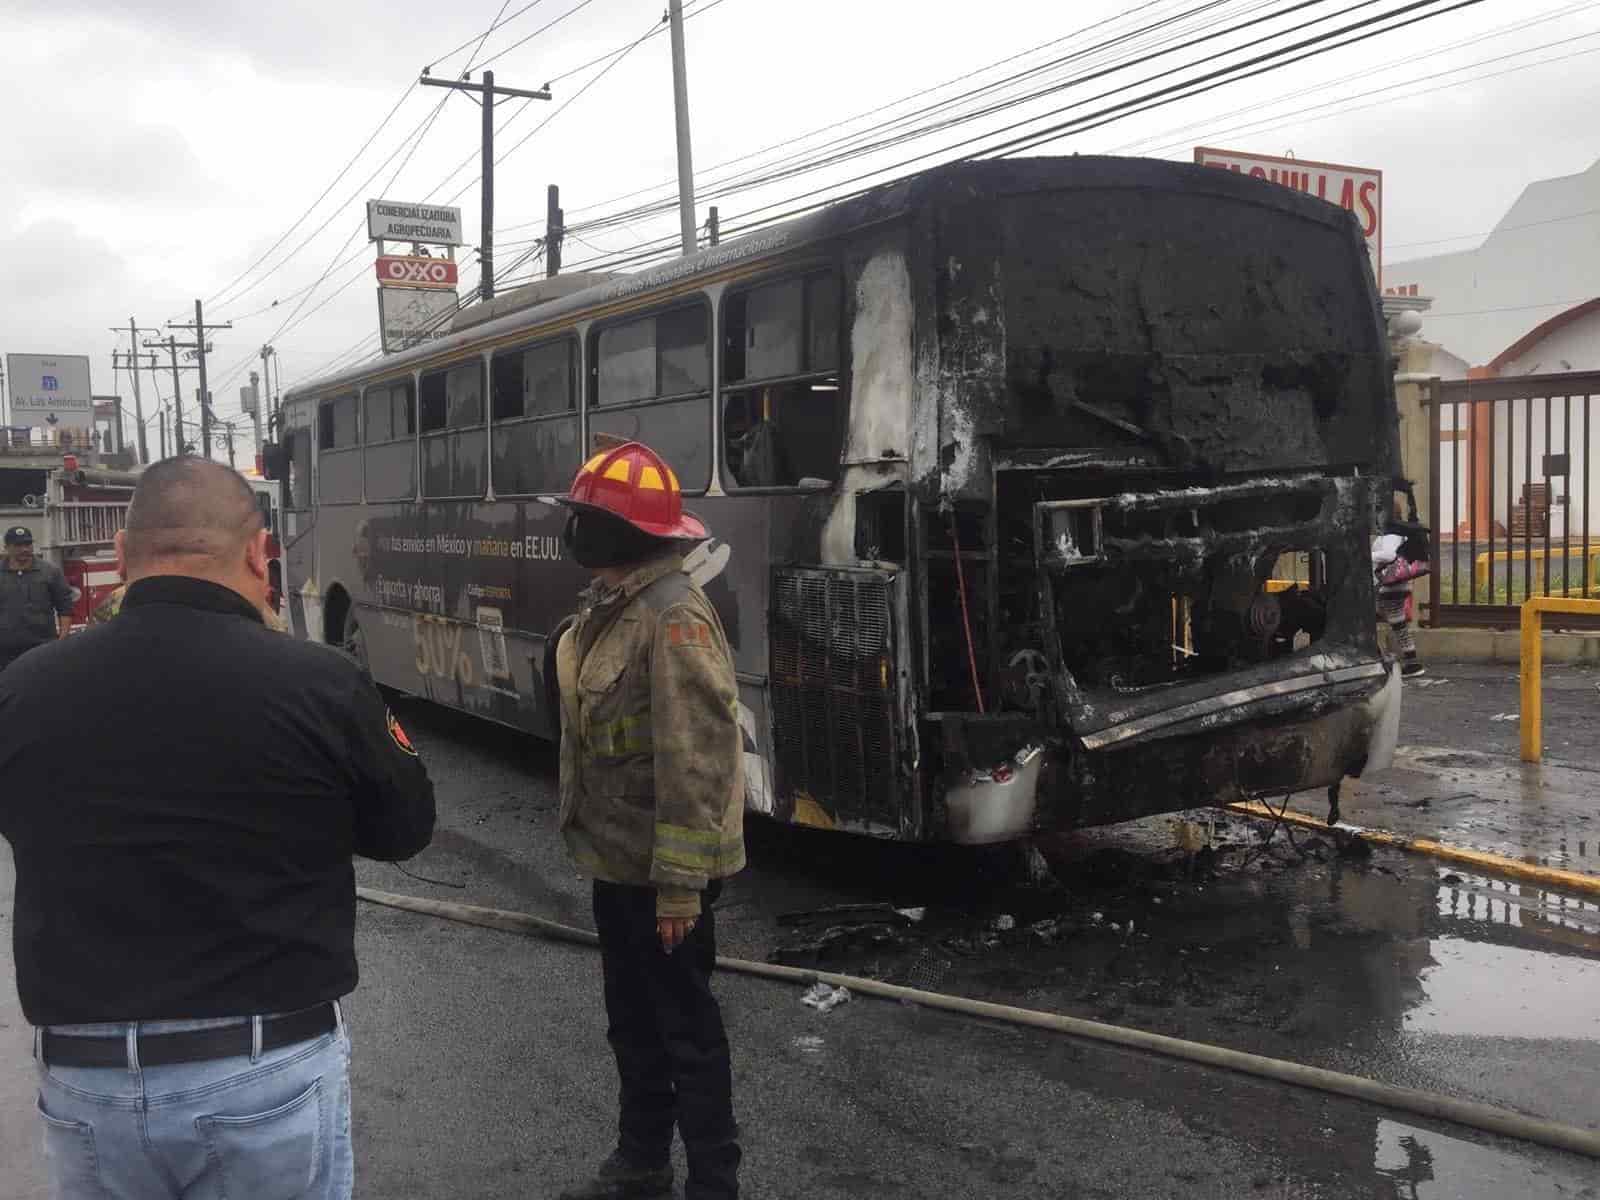 Después de una aparente falla en el motor, un transporte urbano de la Ruta 70 se incendió ayer en la Avenida Benito Juárez, Colonia Exposición, en el municipio de Guadalupe, sin que se reportaran lesionados, únicamente daños materiales.